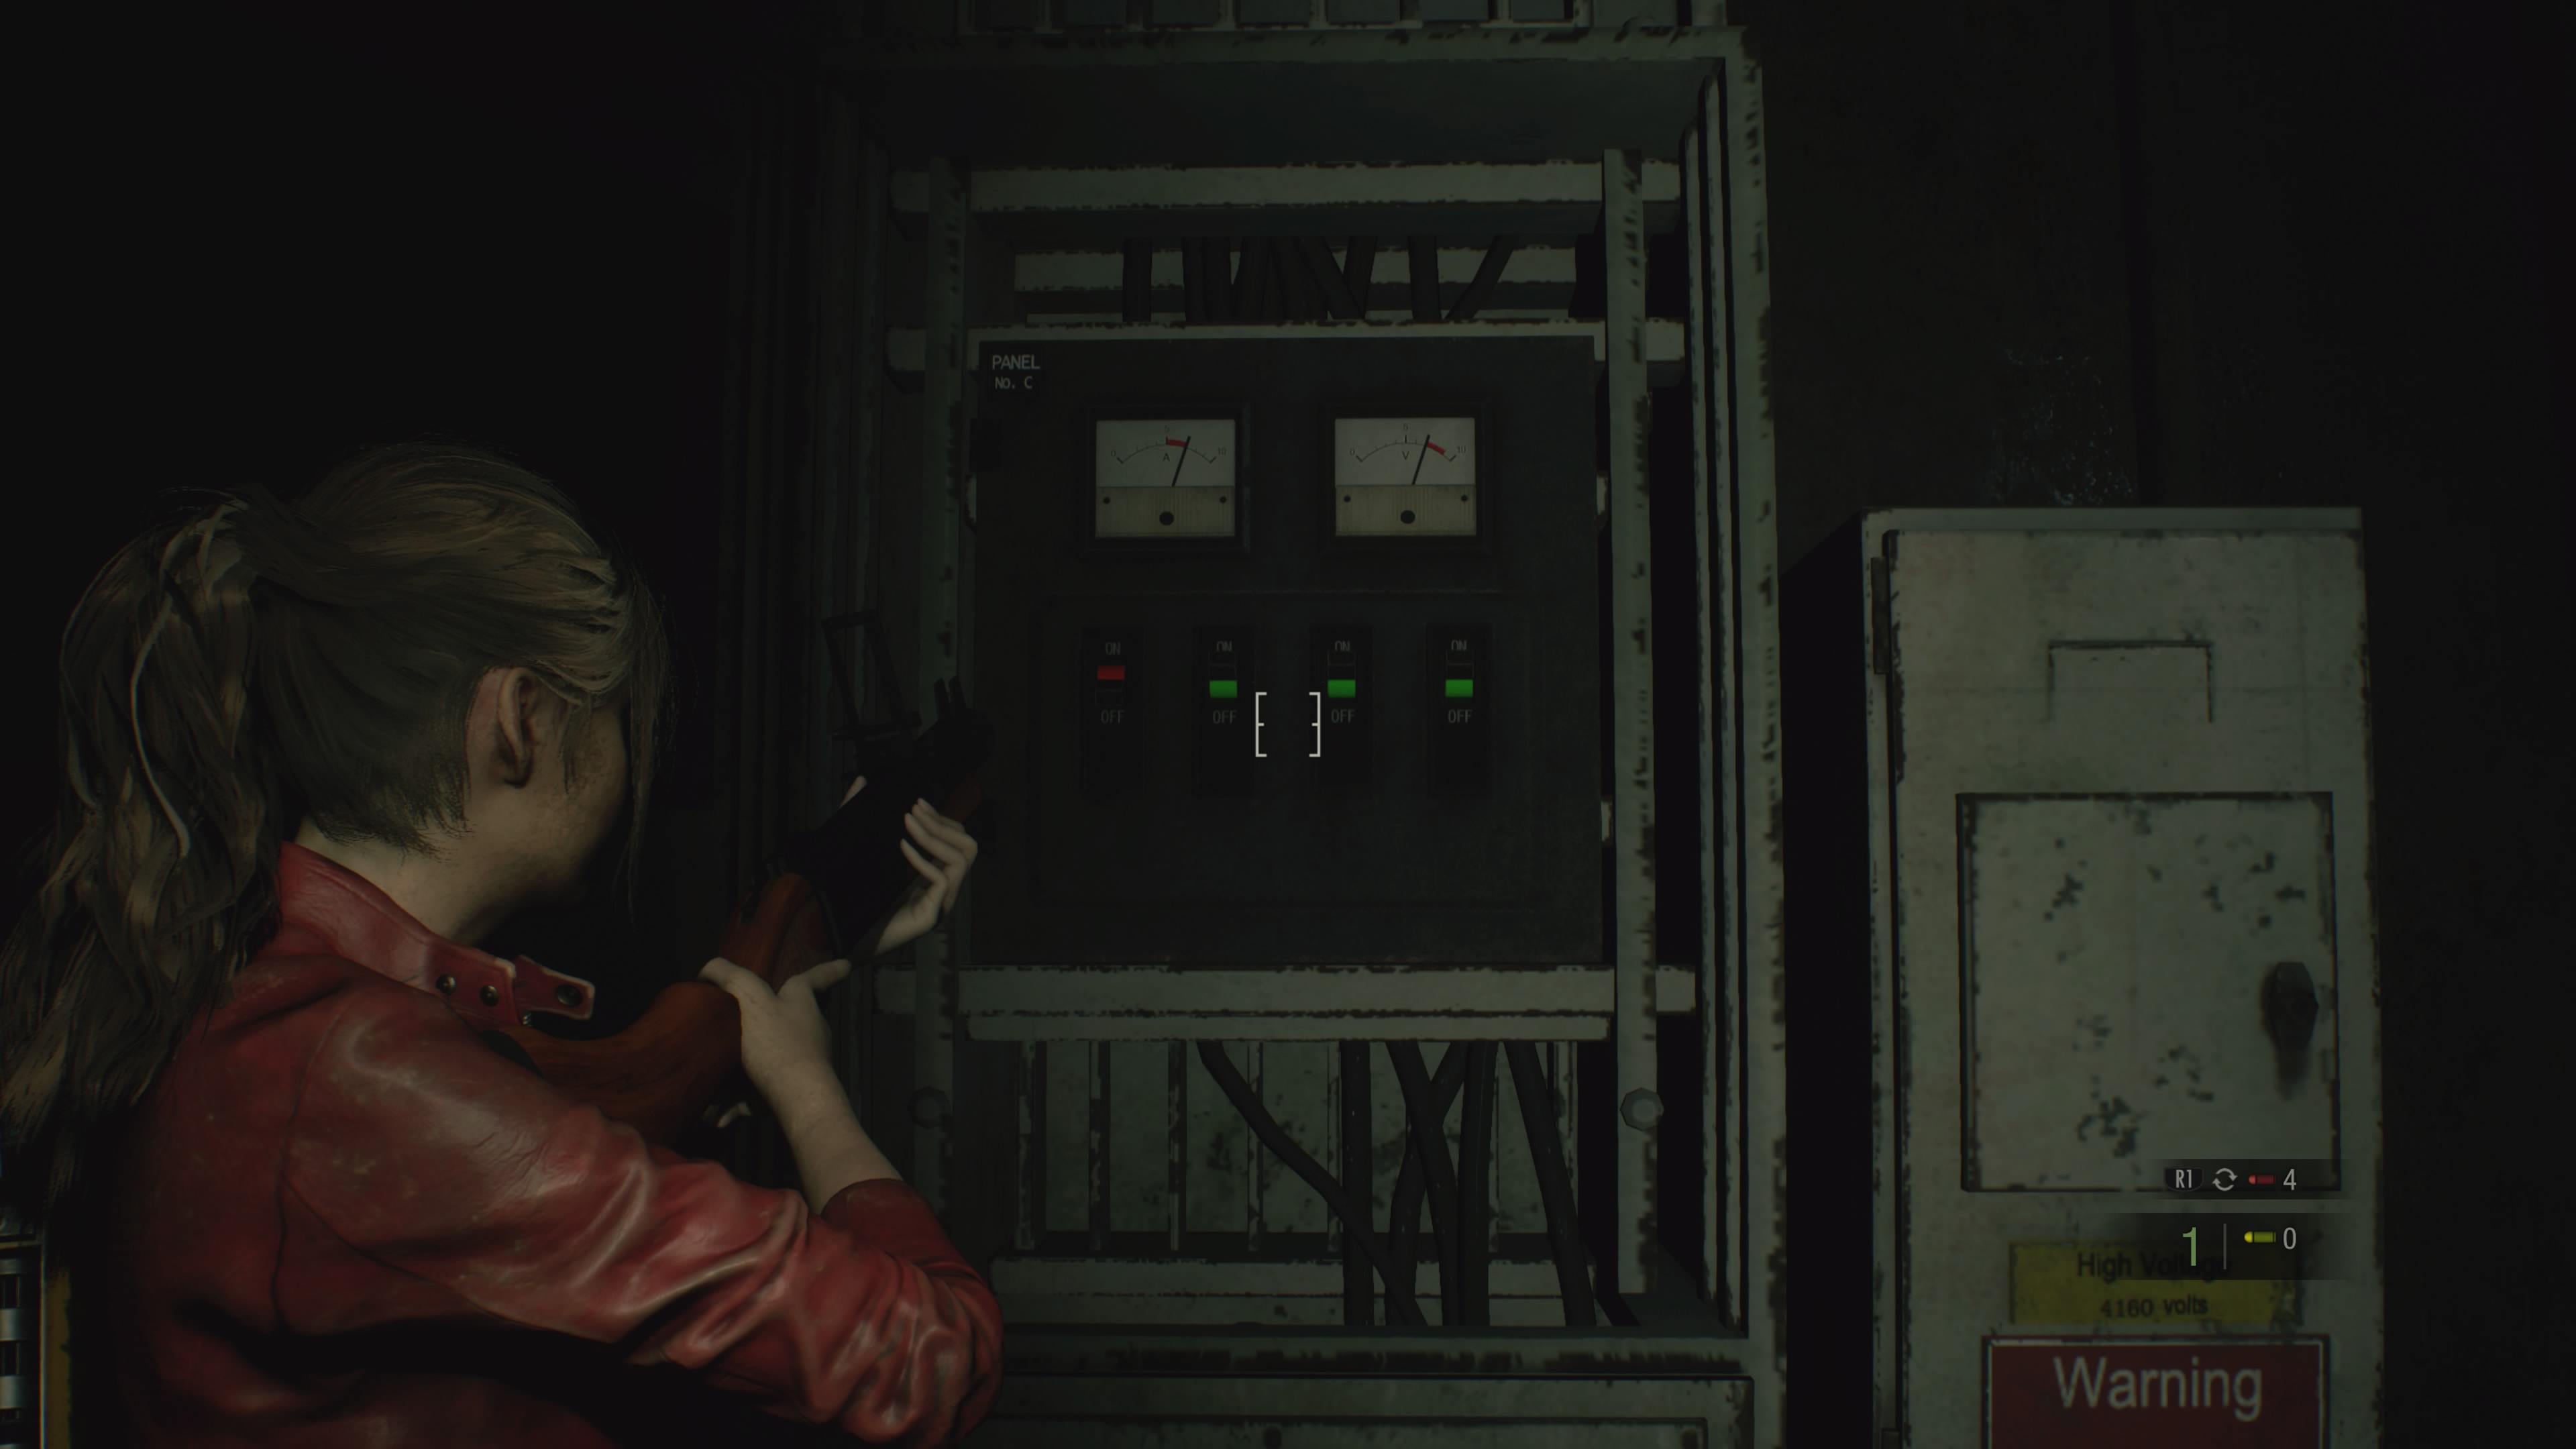 Resident Evil 2 Remake detonado, saibas as senhas, segredos, enigmas